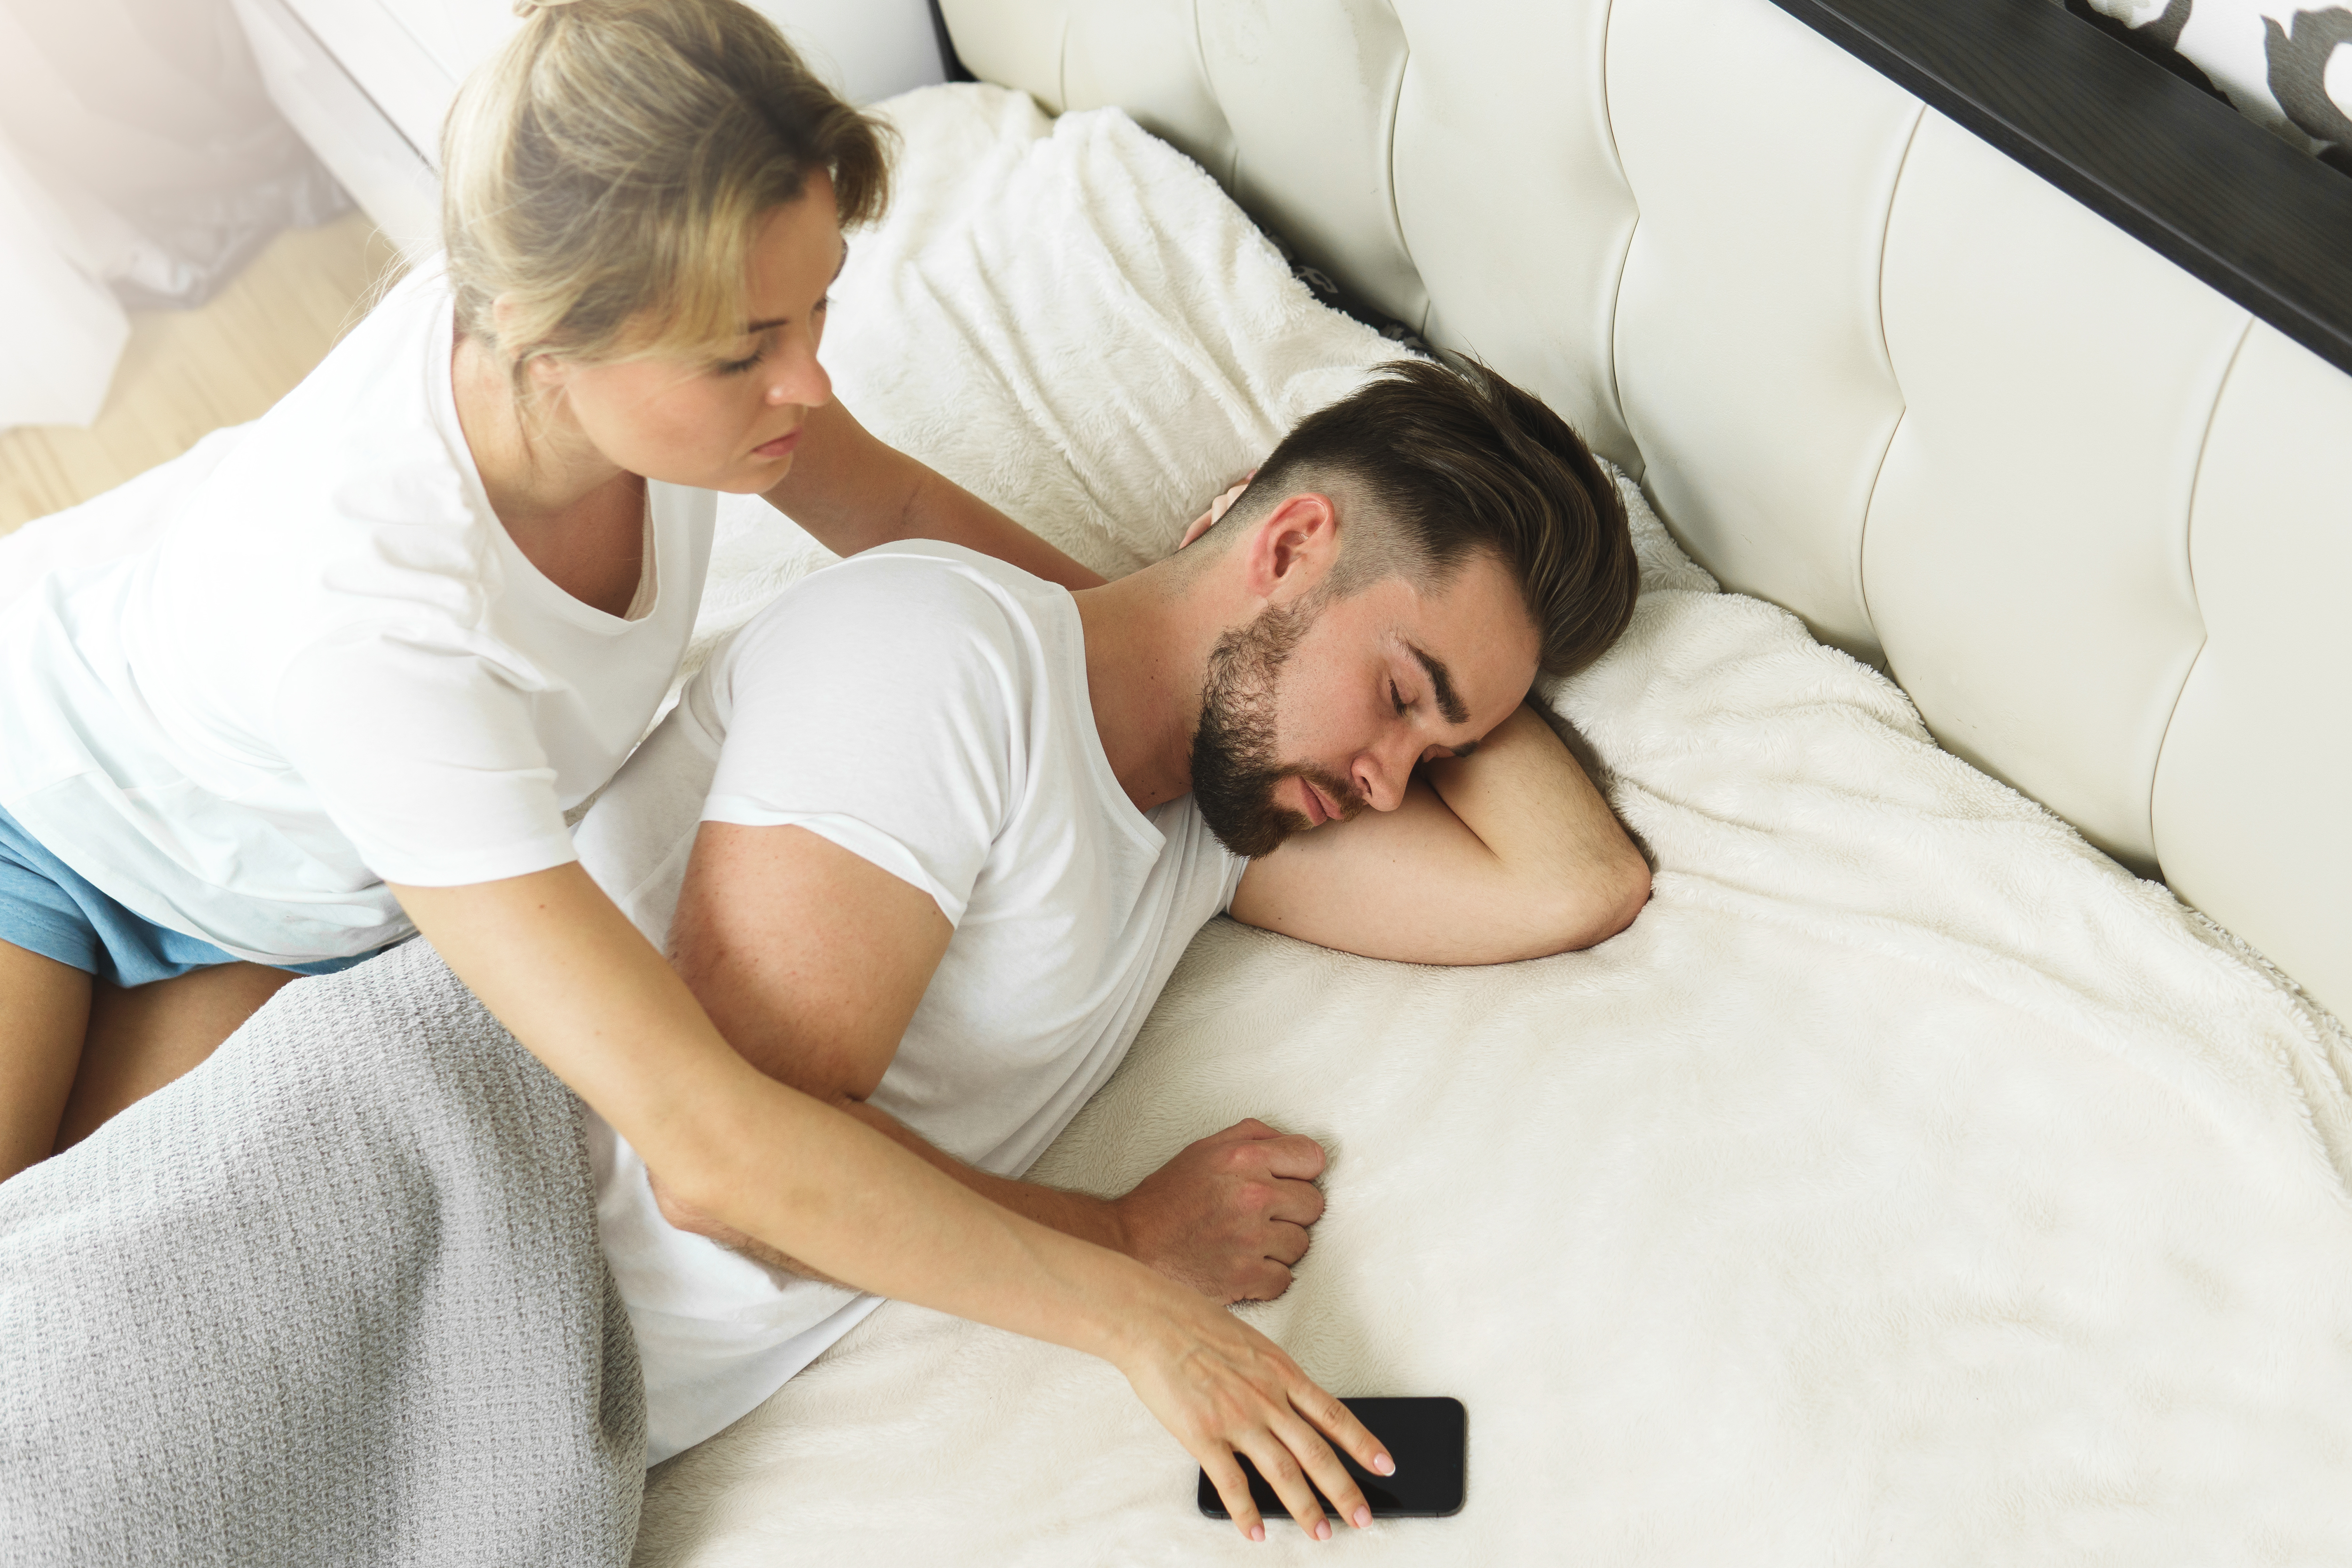 Une femme qui essaie de prendre le téléphone de son partenaire pendant qu'il dort | Source : Shutterstock